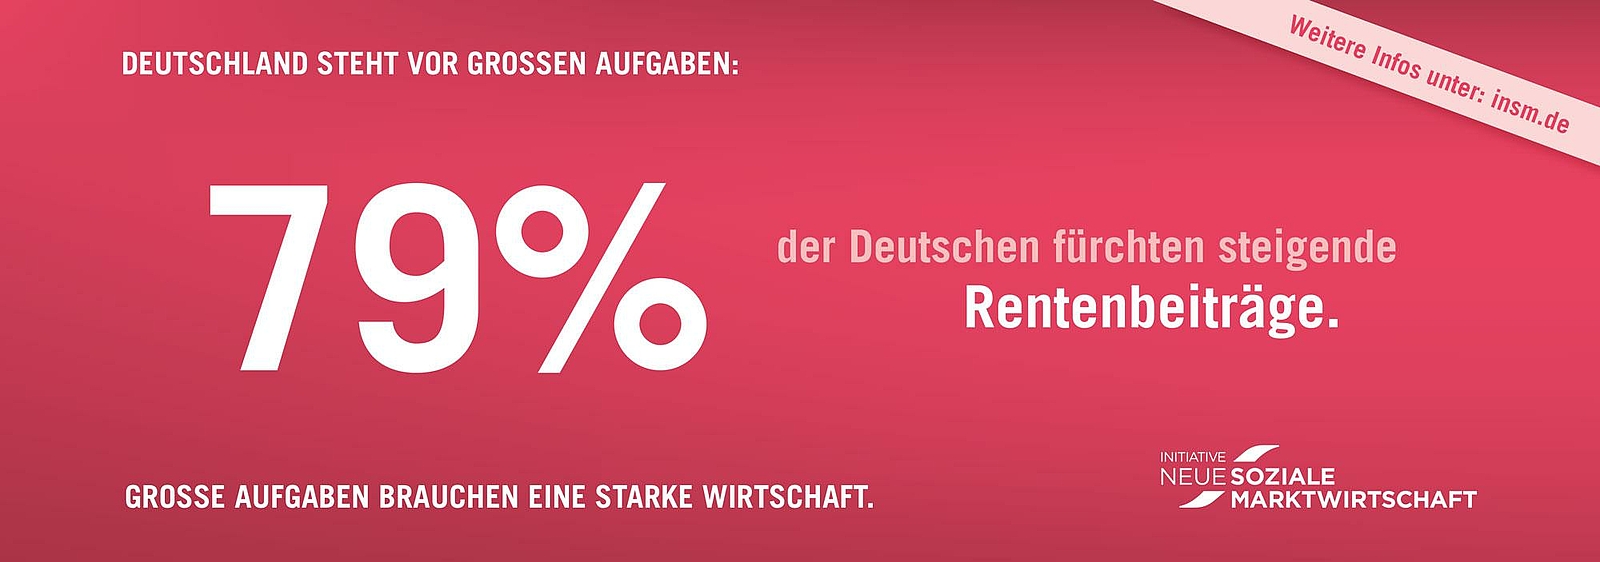 Anzeigenmotiv der INSM - 79% der Deutschen fürchten steigende Rentenbeiträge.